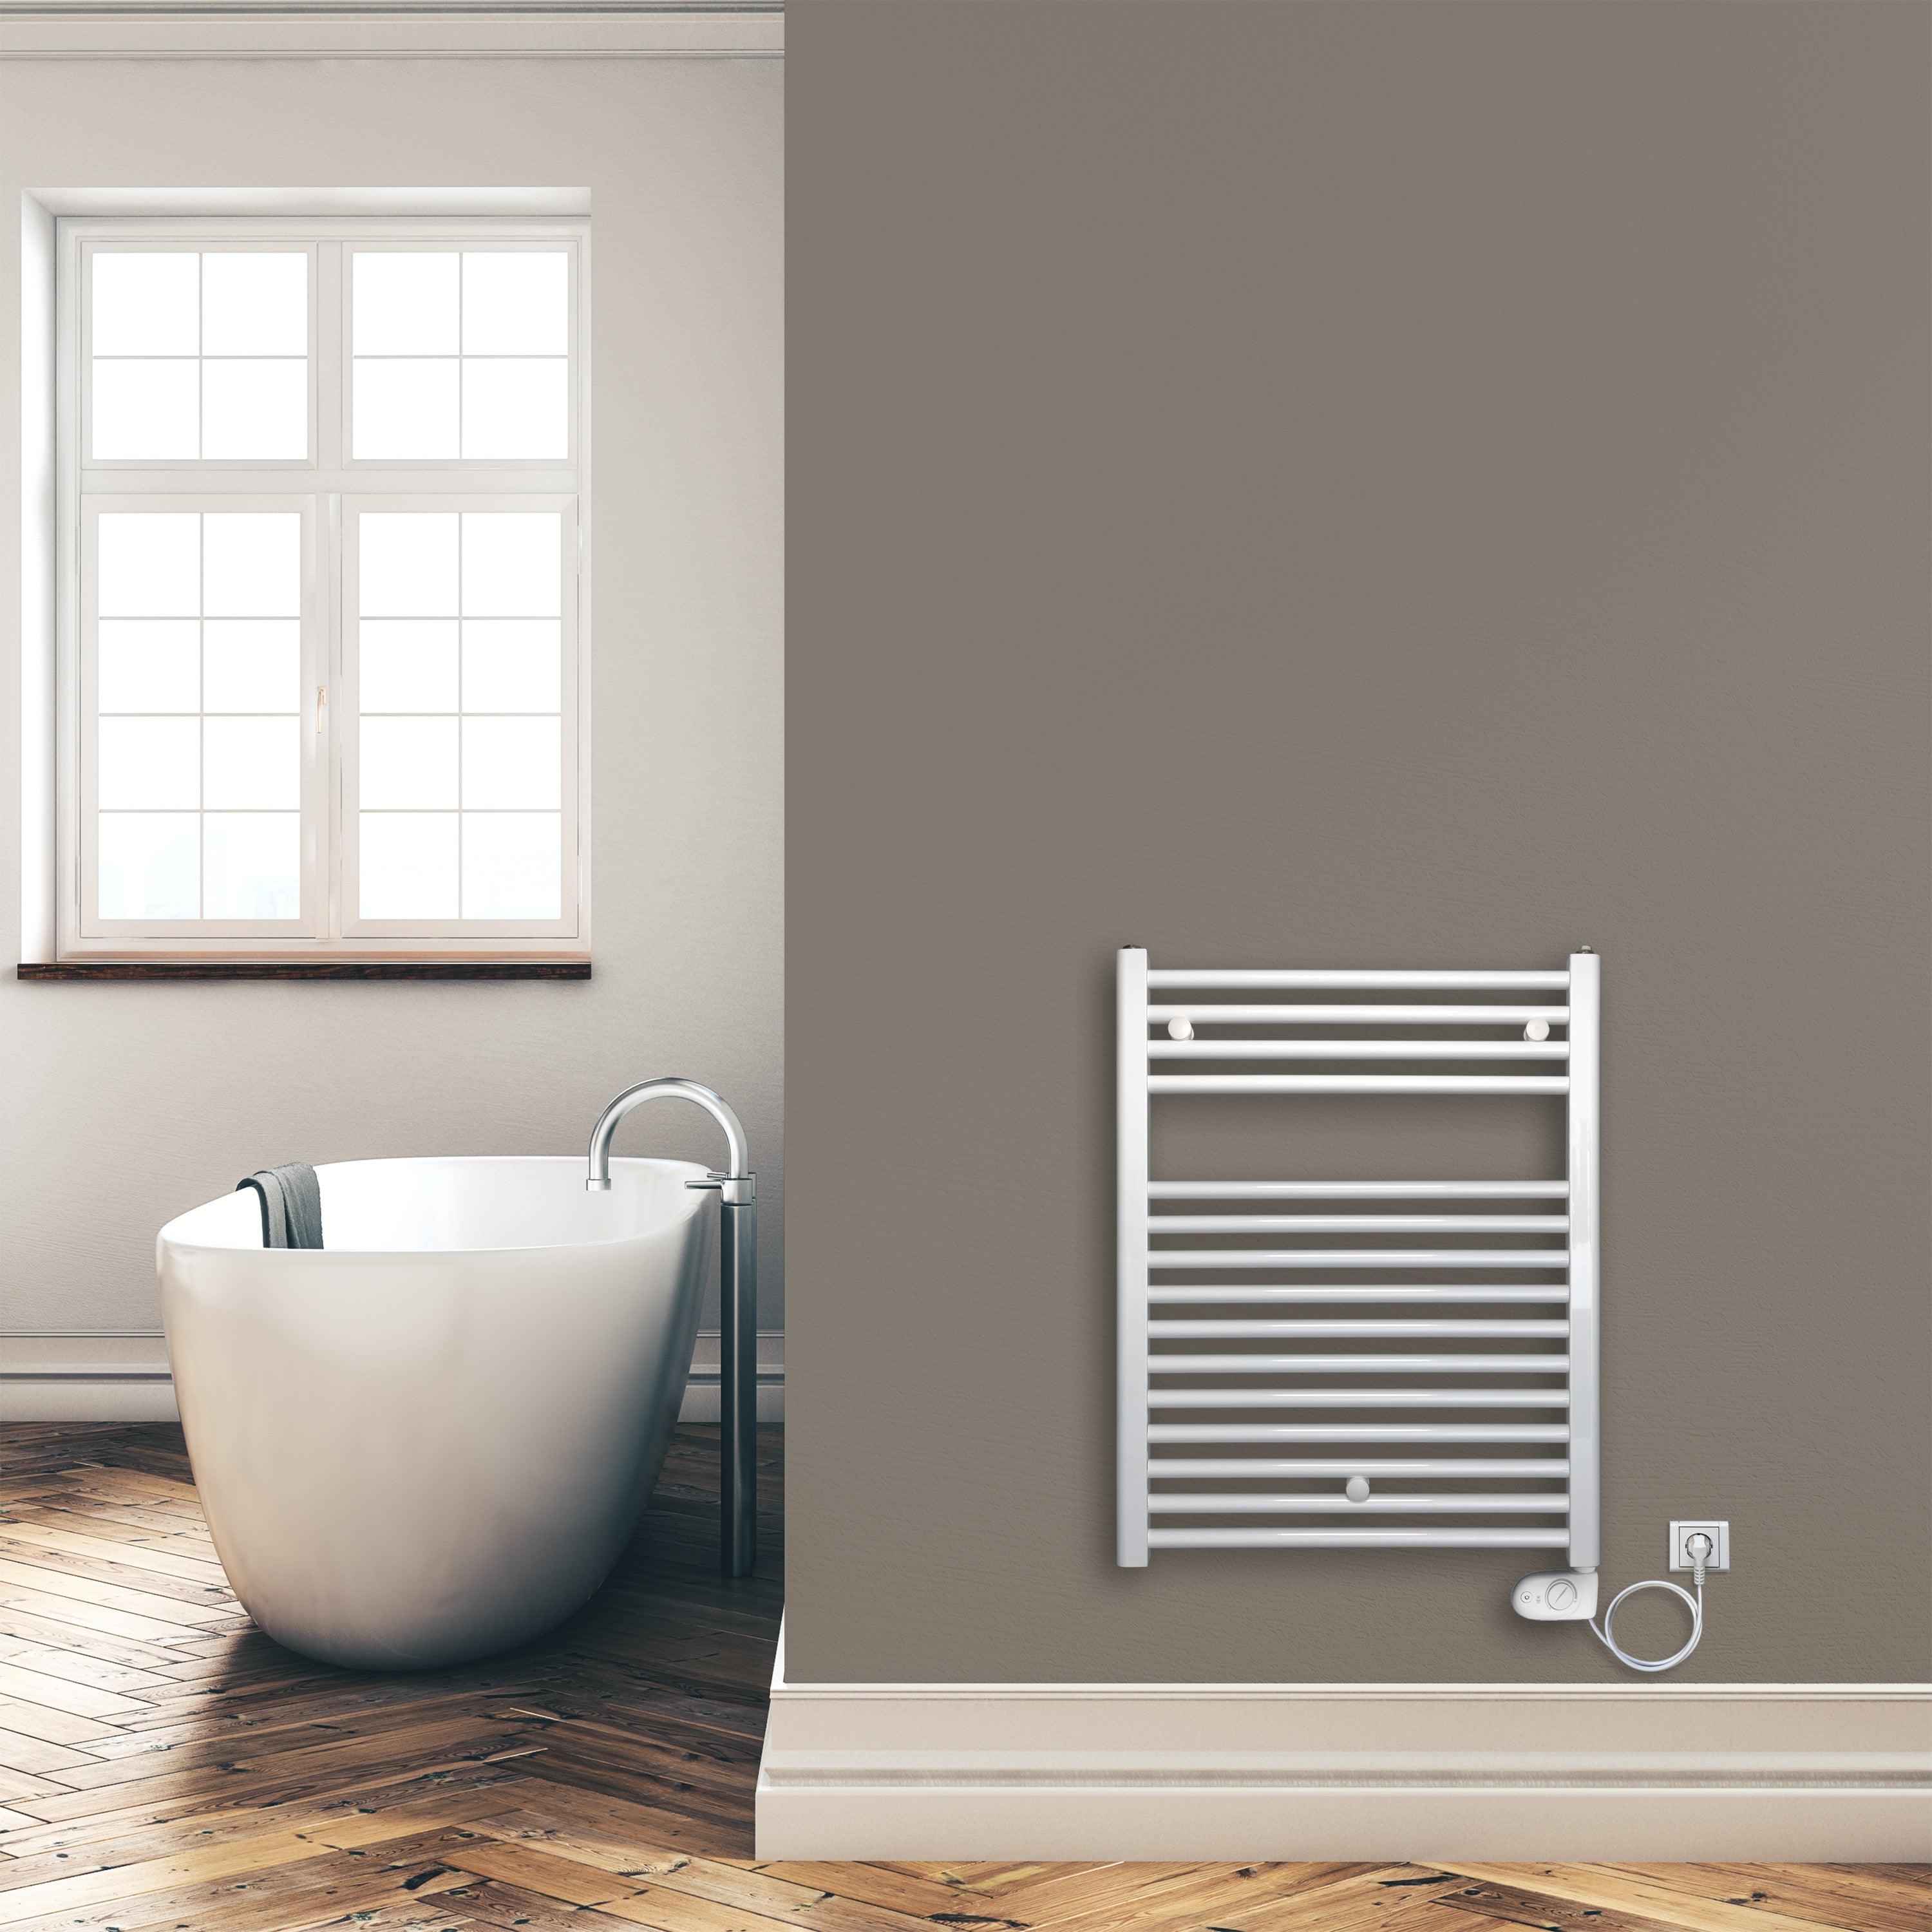 Badheizkörper 764 x 600 mm gerade mit analogem Thermostat Elektroheizkörper Handtuchwärmer elektrischer Handtuchhalter weiß Montagebeispiel - heizkoerper.shop